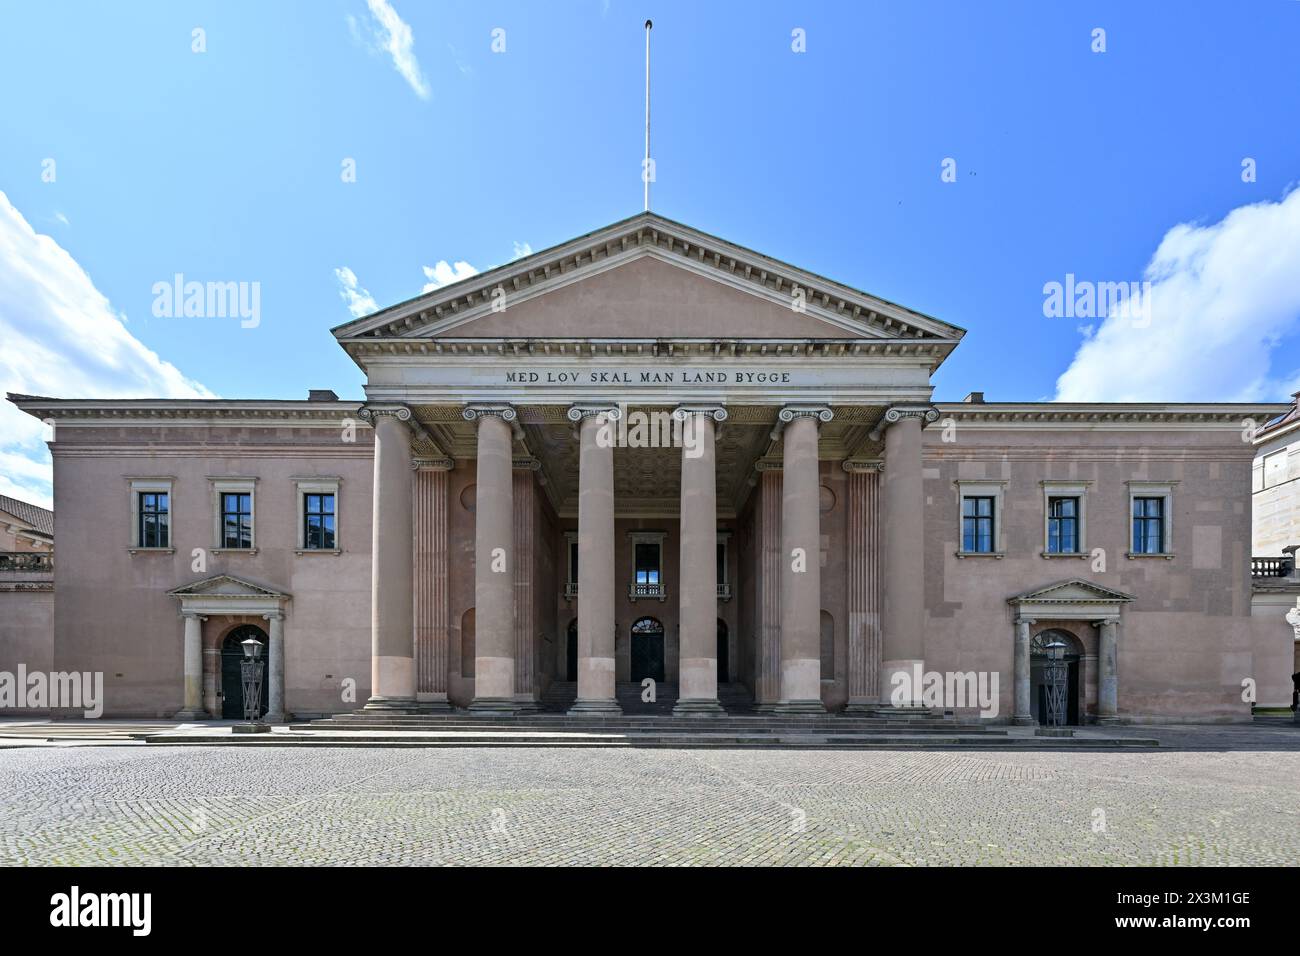 La façade du palais de justice de Copenhague qui est un bâtiment historique situé sur Nytorv à Copenhague, Danemark. Inscription 'avec la loi, vous construirez. Banque D'Images